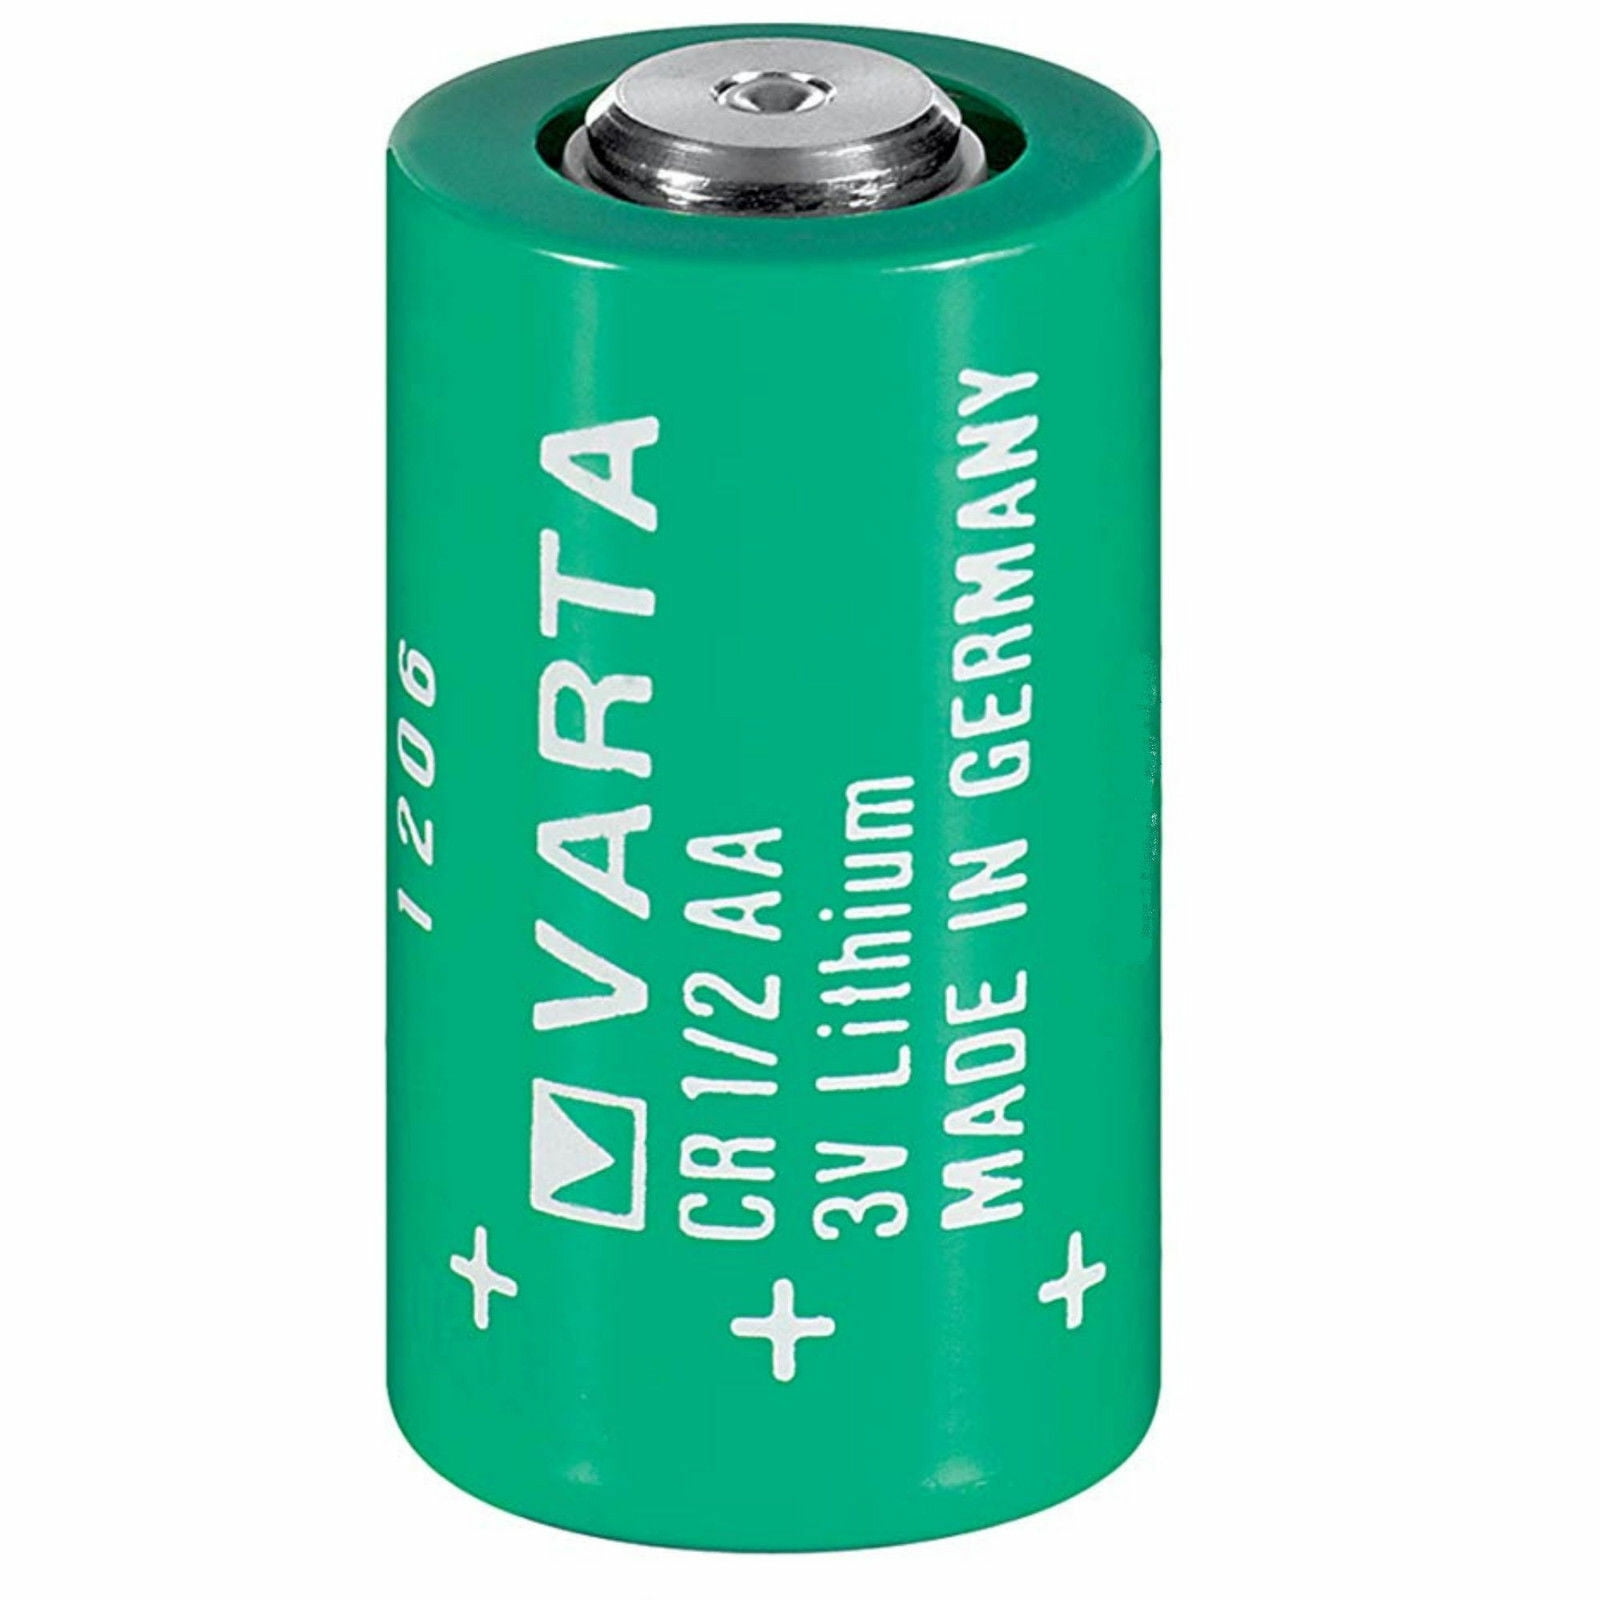 3v battery